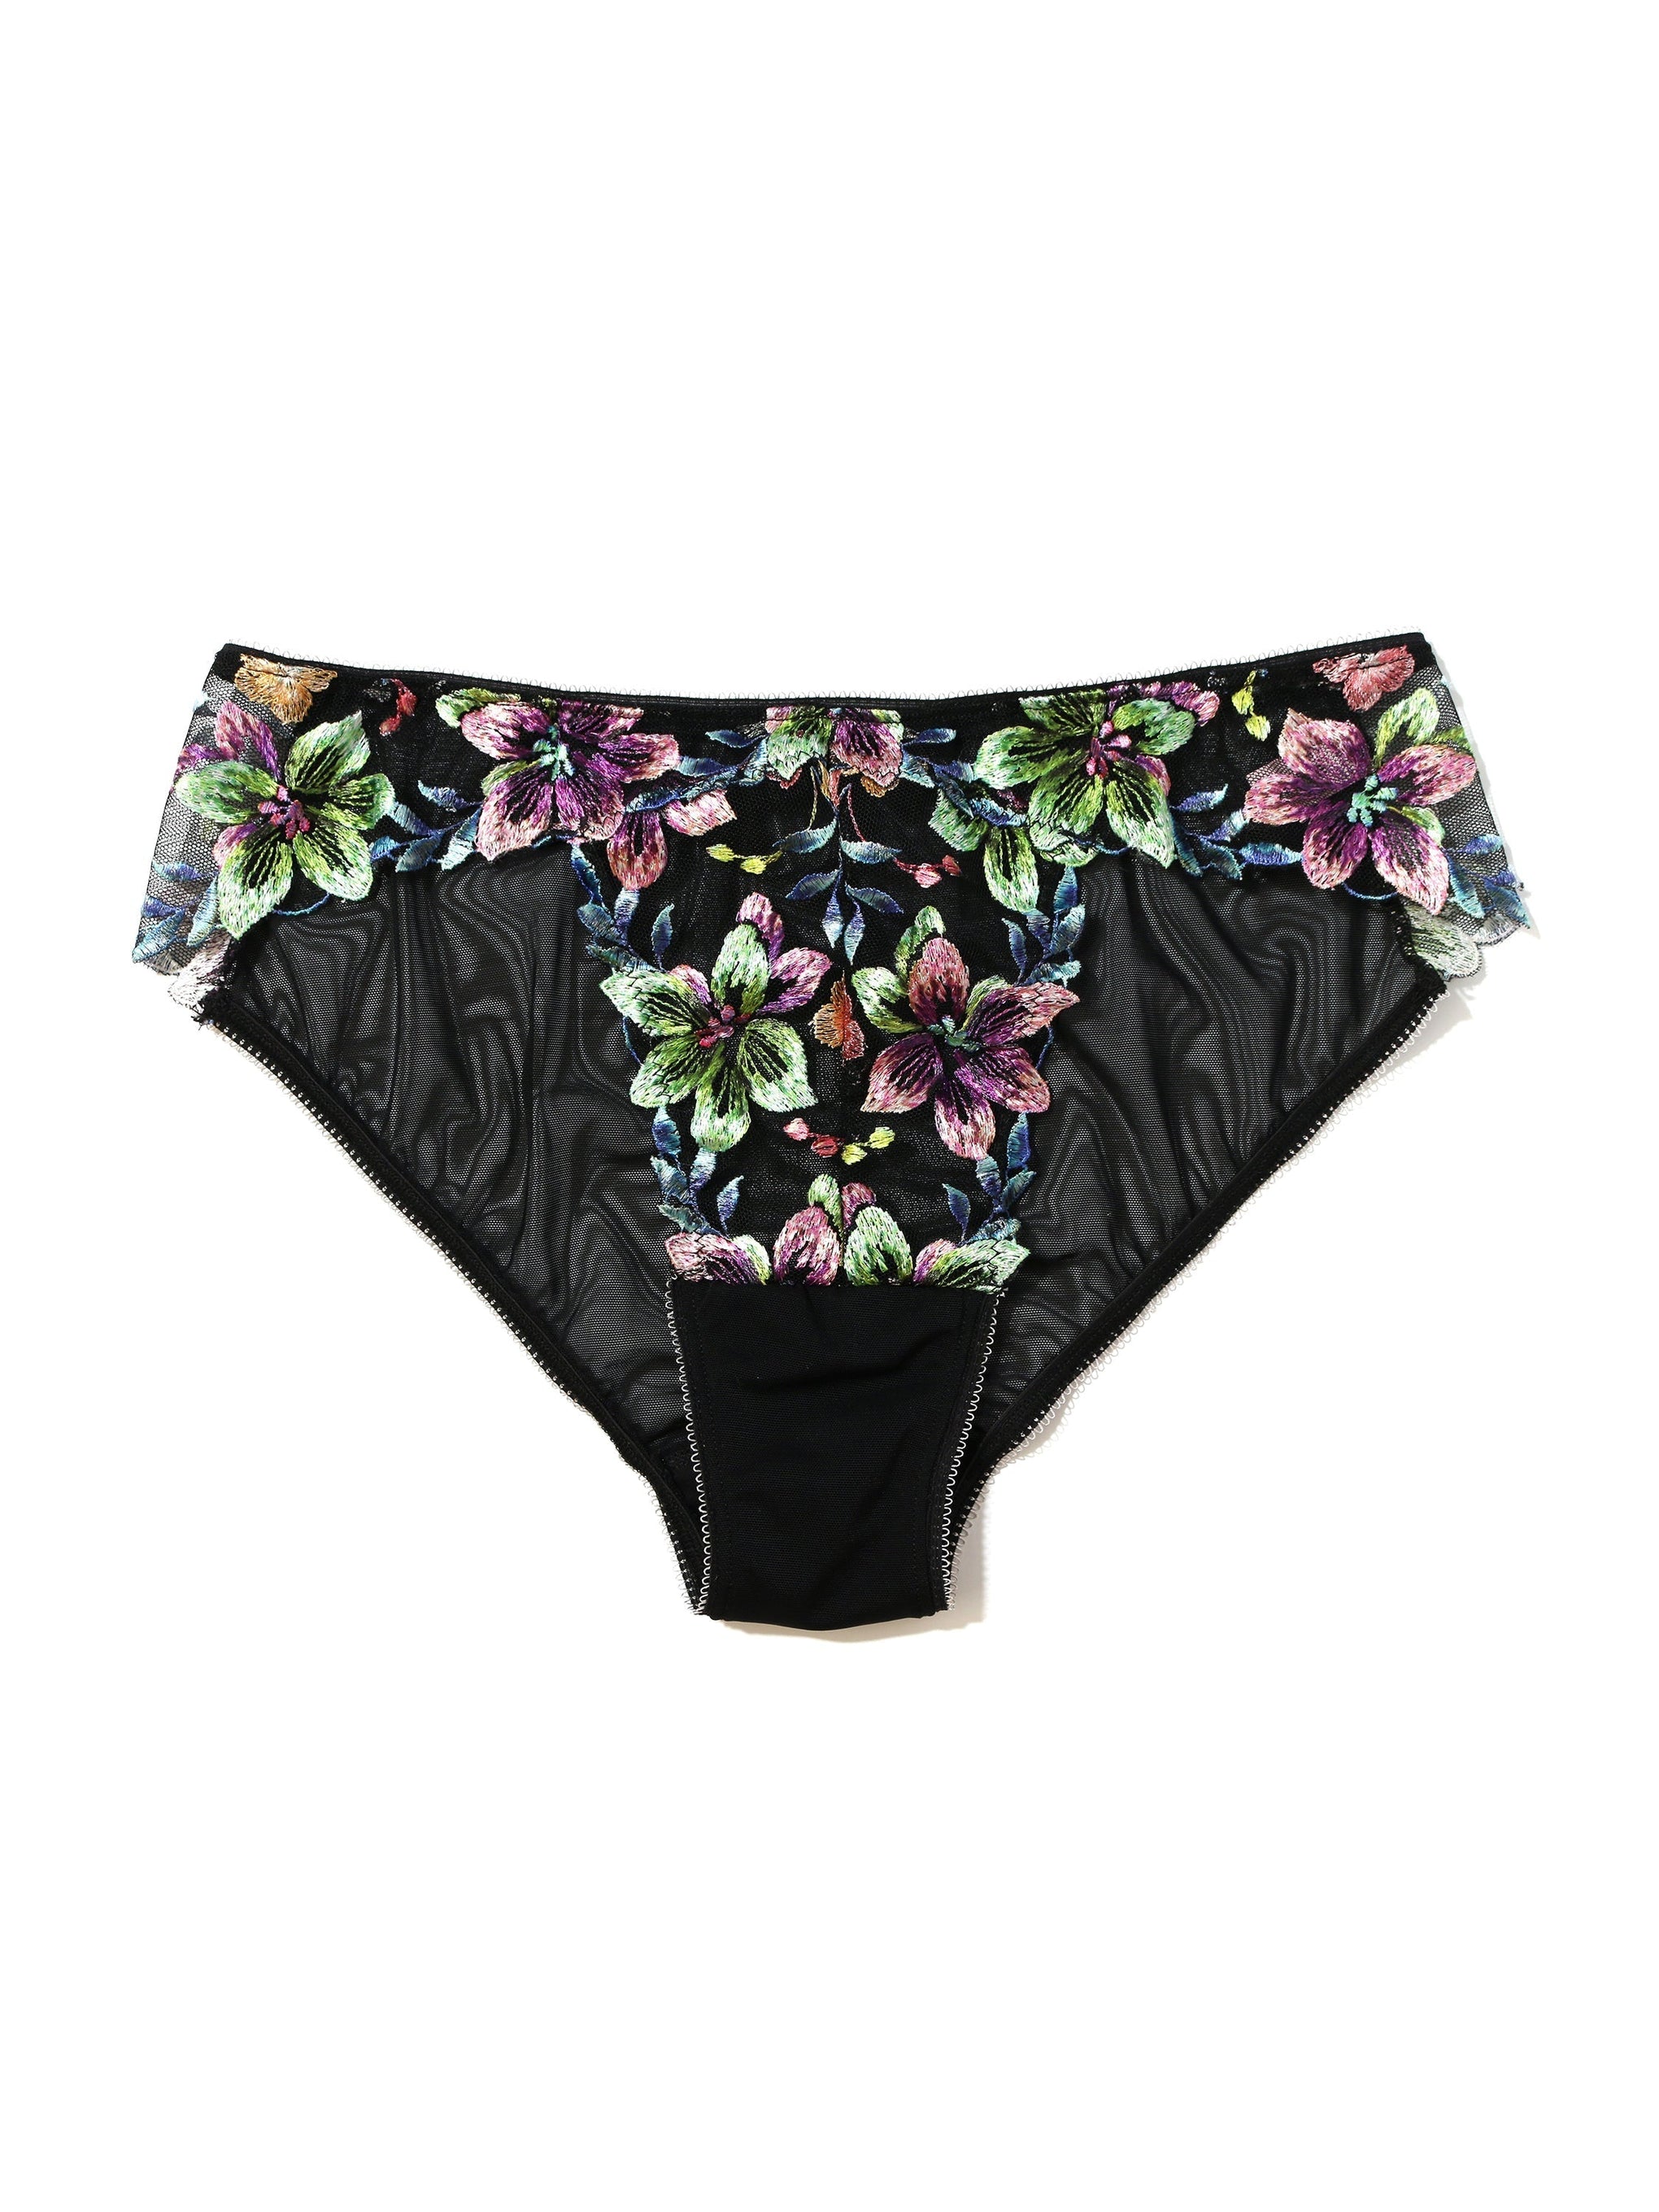 Women's Embroidered Mesh Cheeky Underwear - Auden™ Blue XL